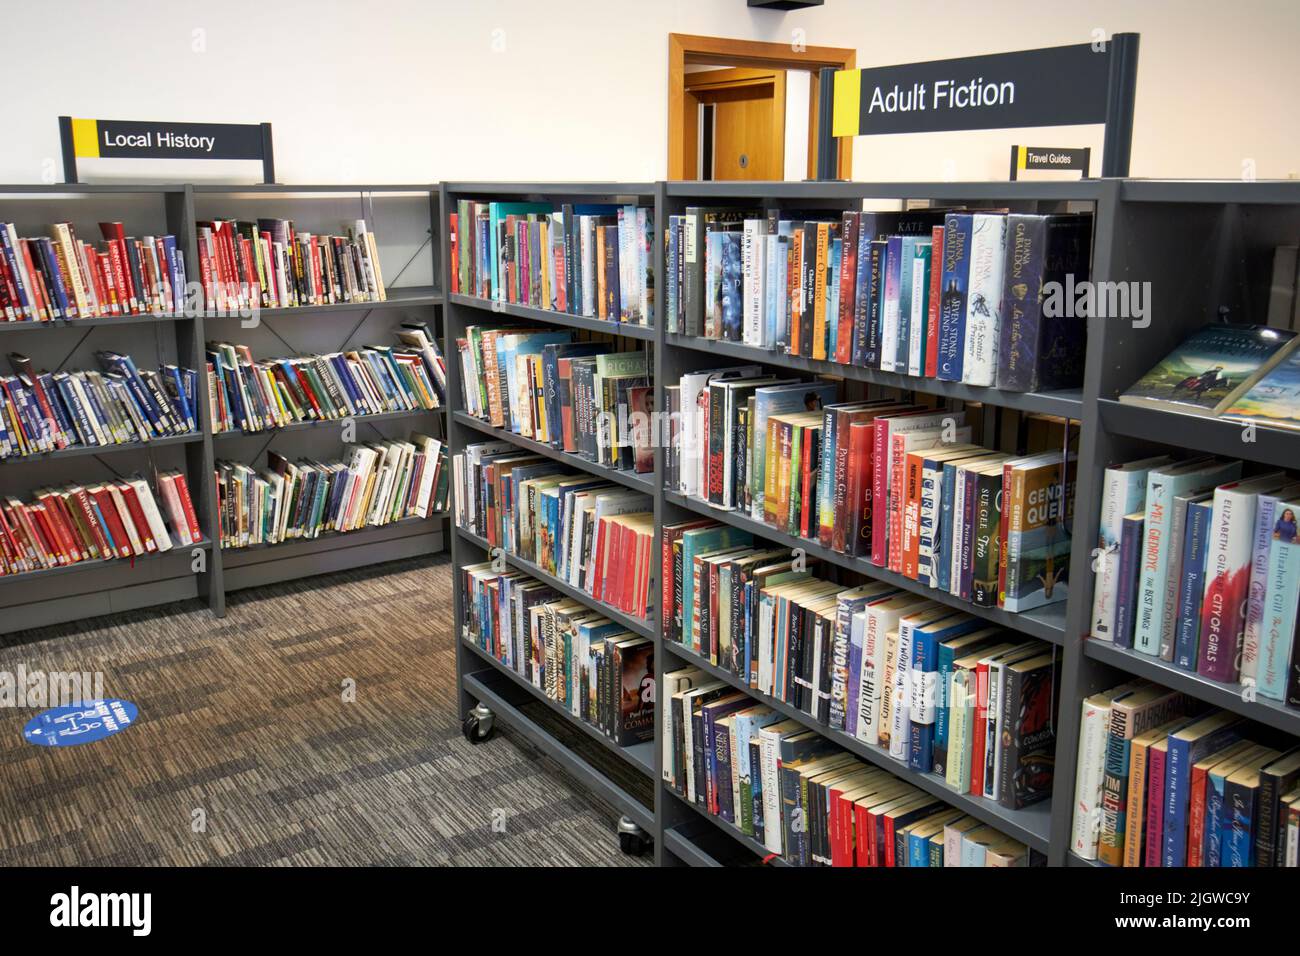 Des sections de fiction pour adultes et d'histoire locale de la bibliothèque centrale de Liverpool merseyside england uk Banque D'Images